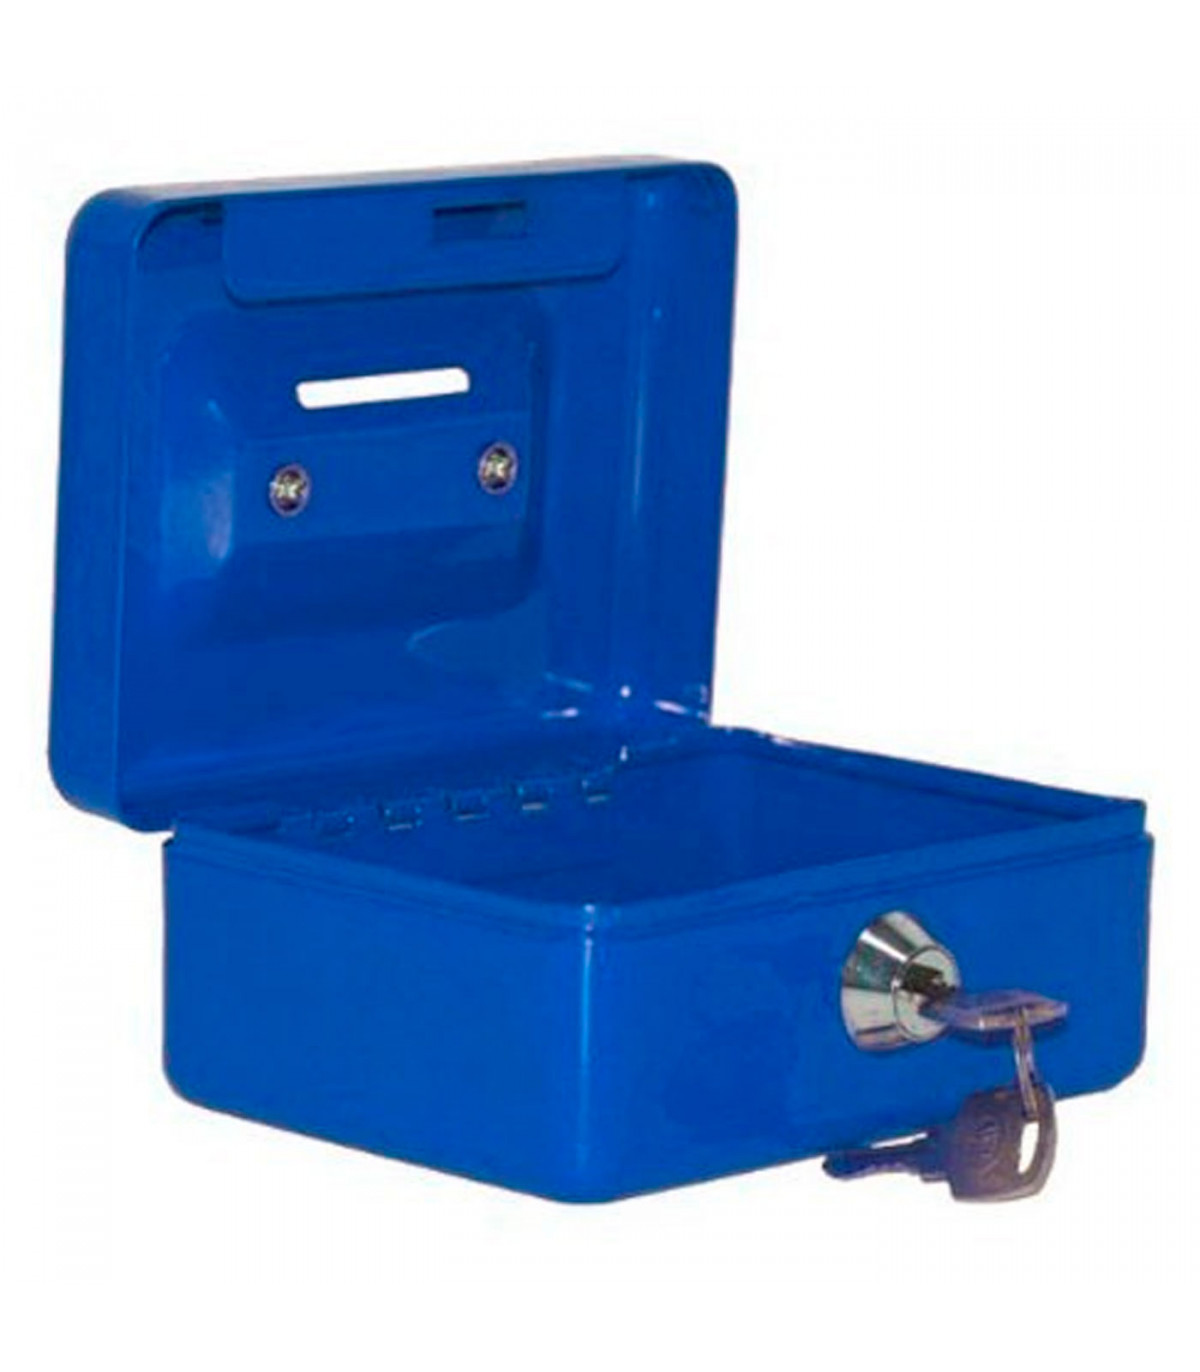 Tradineur - Caja de caudales metálica nº 8 con combinación de 3 dígitos,  asa y bandeja con compartimentos para dinero, monedas y